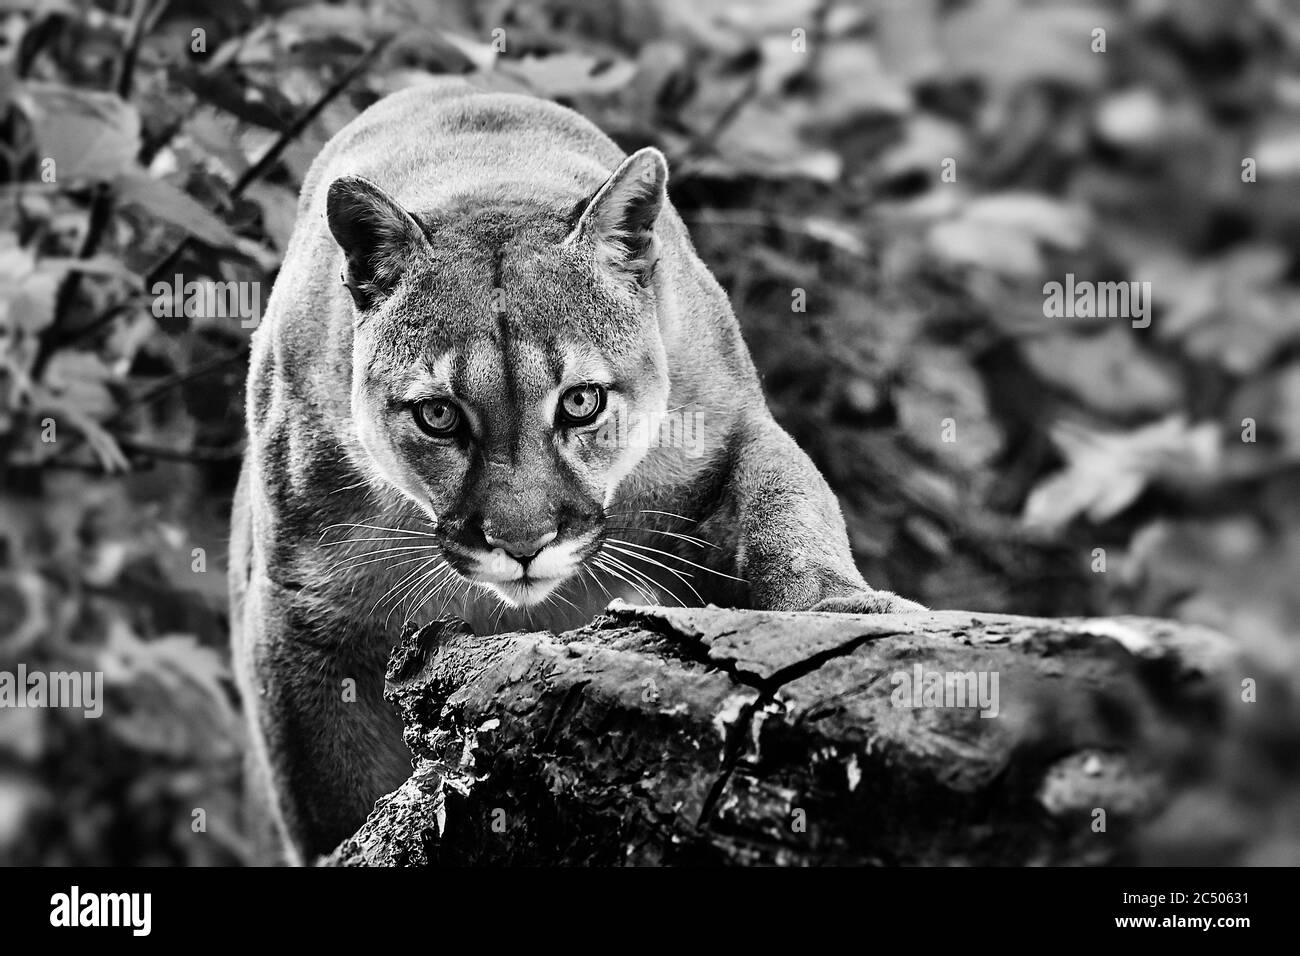 Portrait de la belle Puma en forêt d'automne. Couguar américain - lion de montagne, pose frappante, scène dans les bois, faune Amérique. Banque D'Images